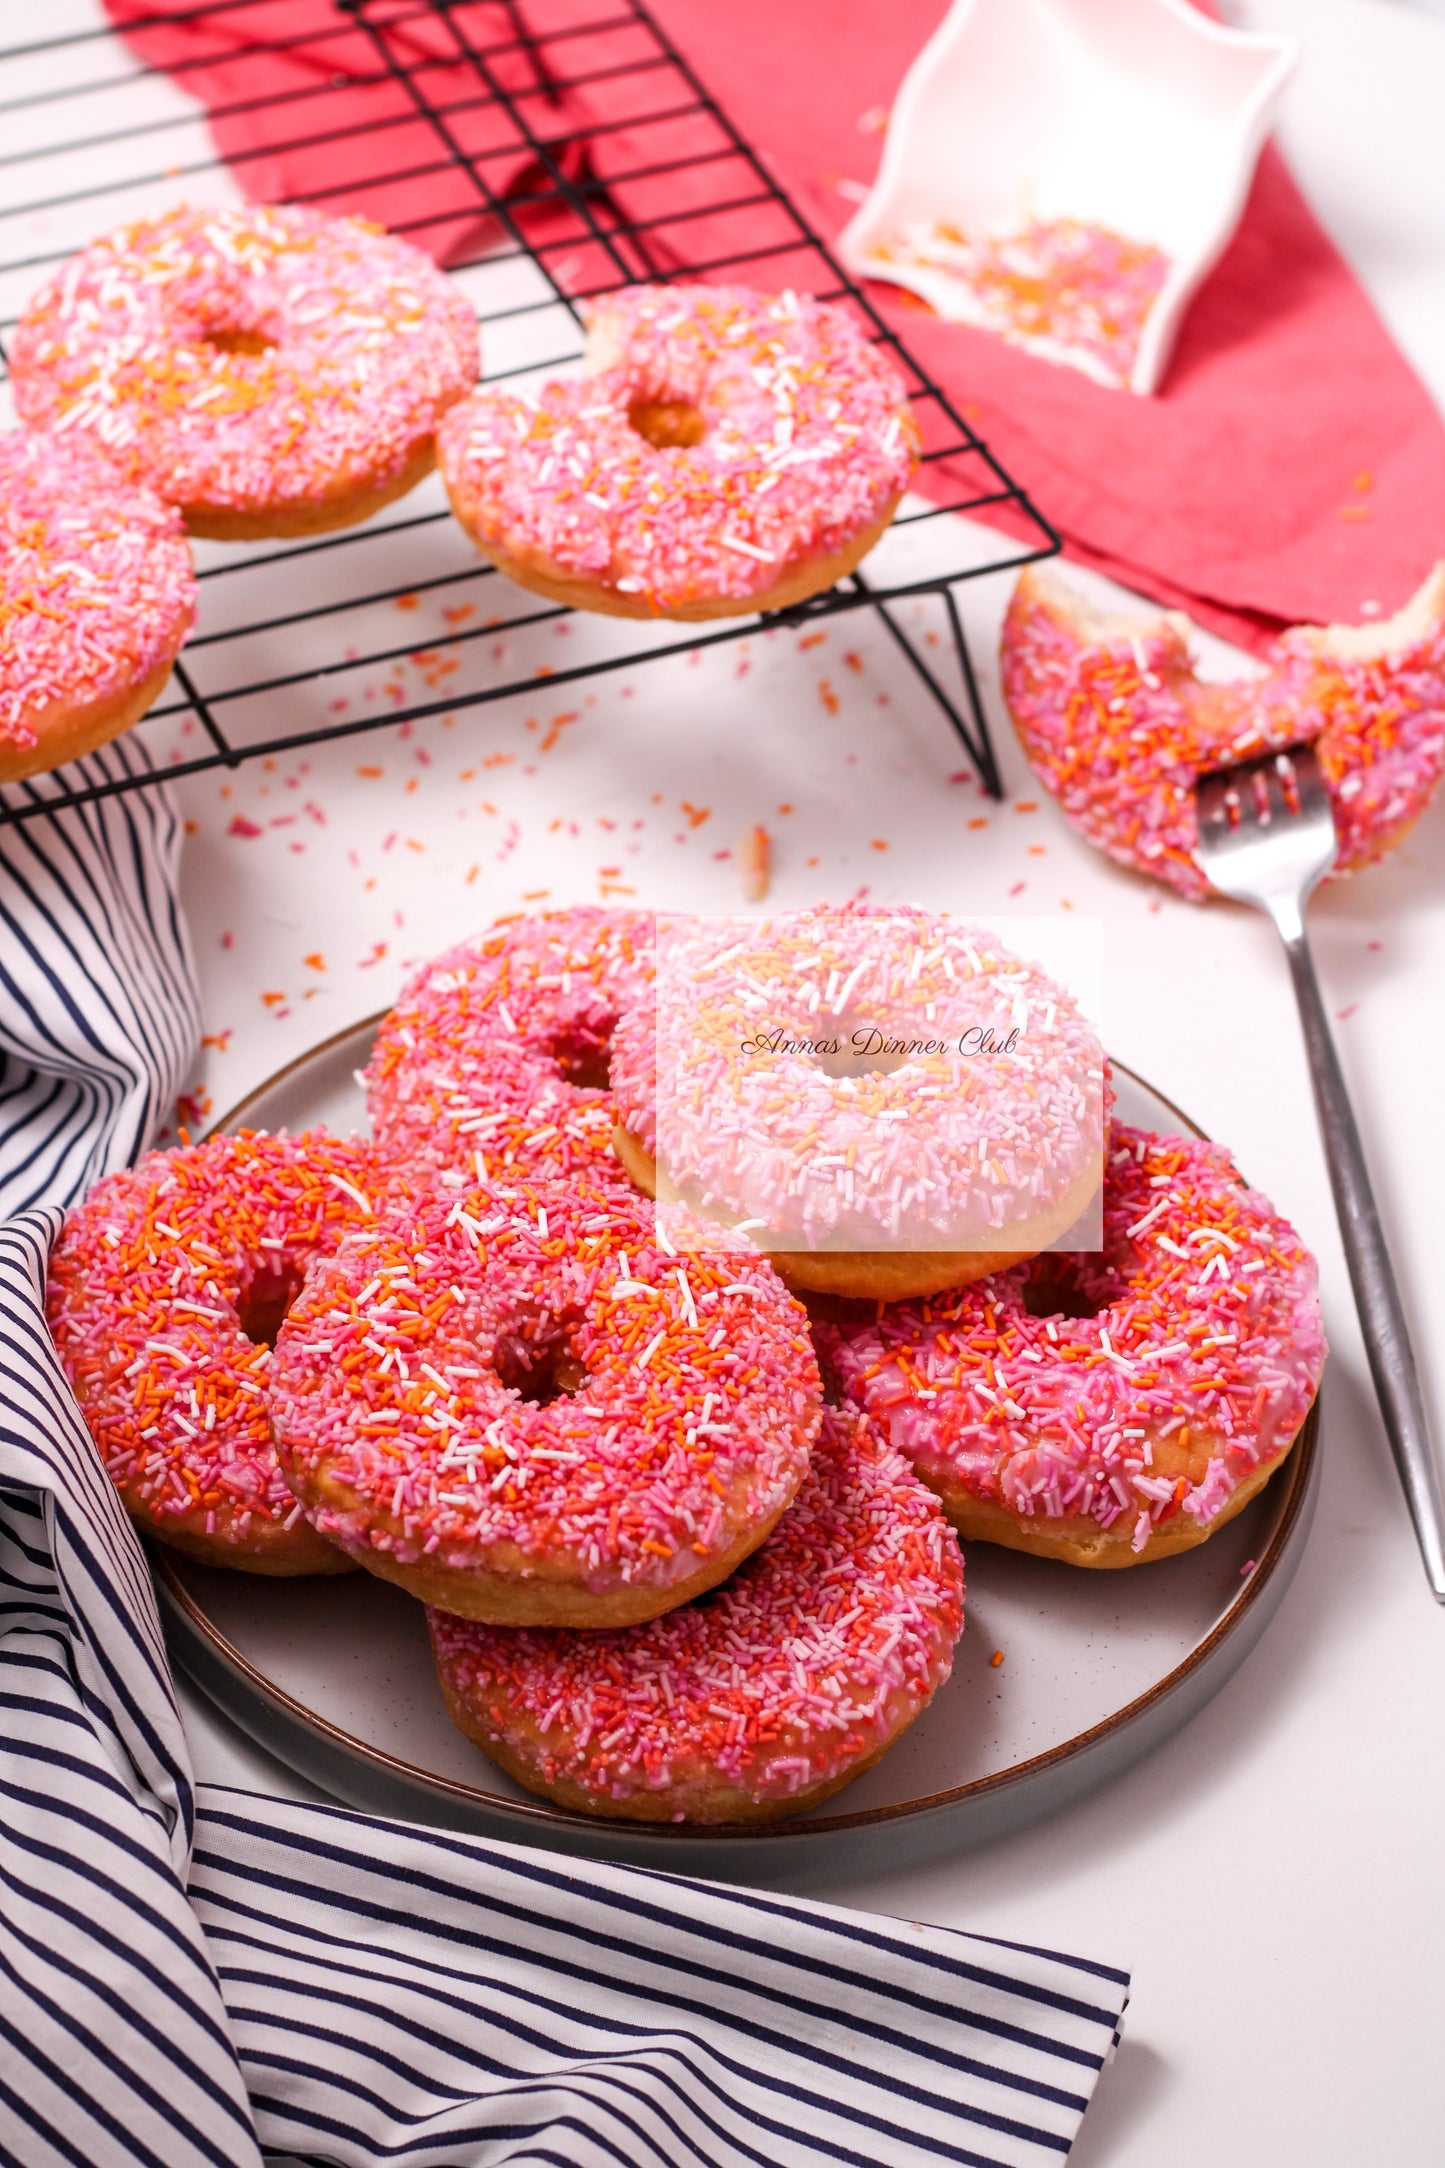 Home made pink- orange donuts PLR set